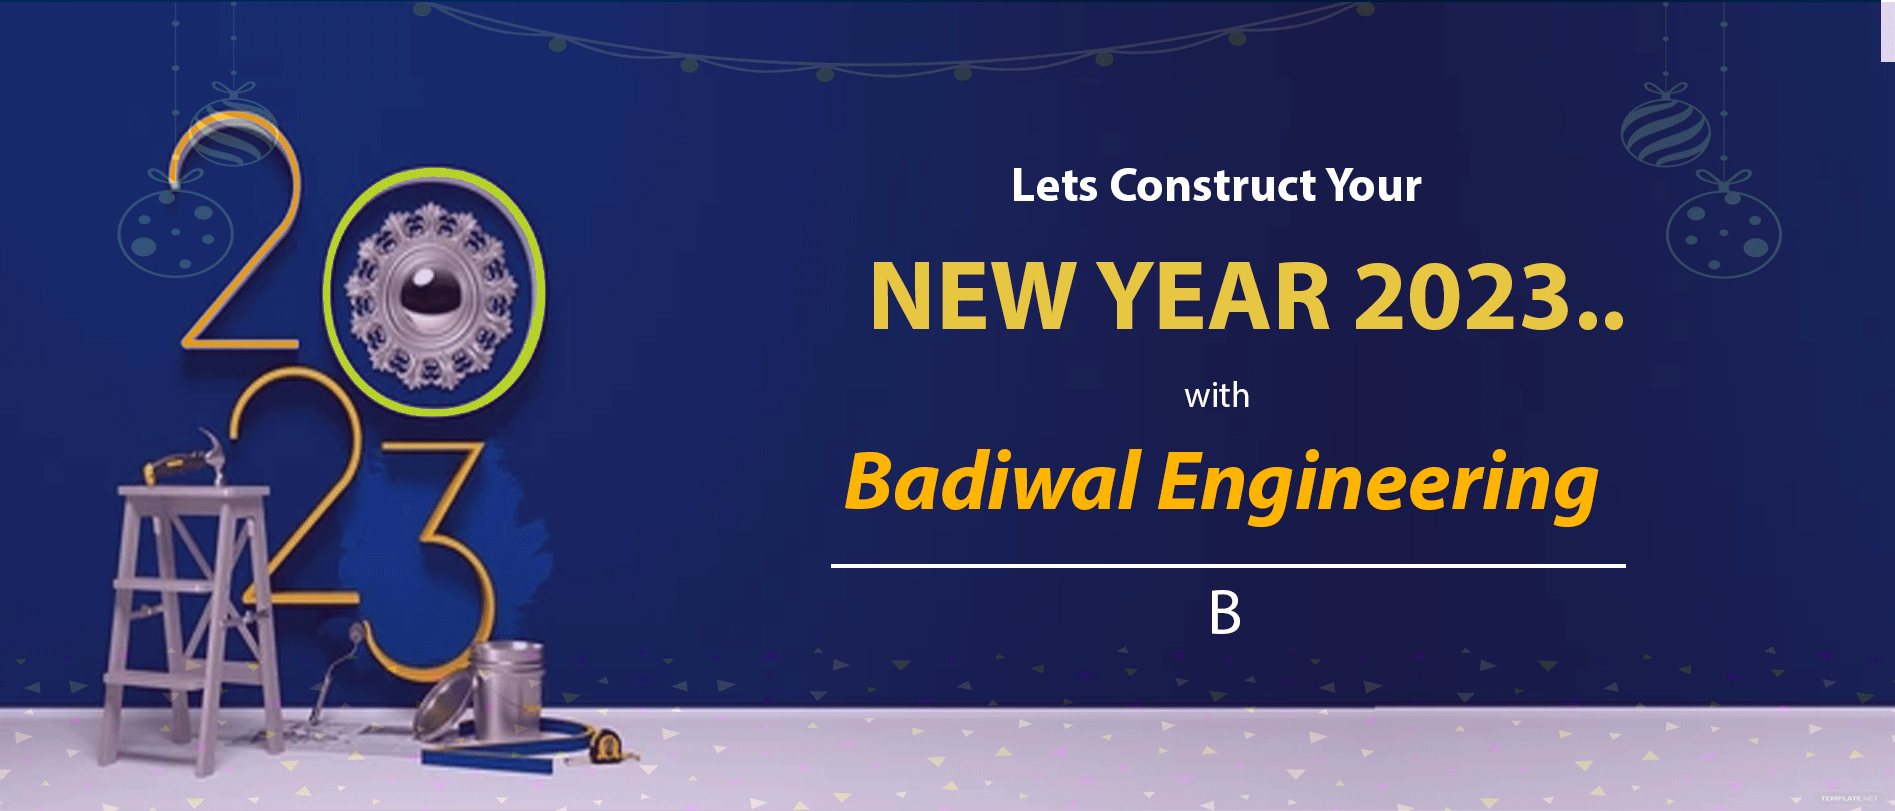 New Year at Badiwal Engineering